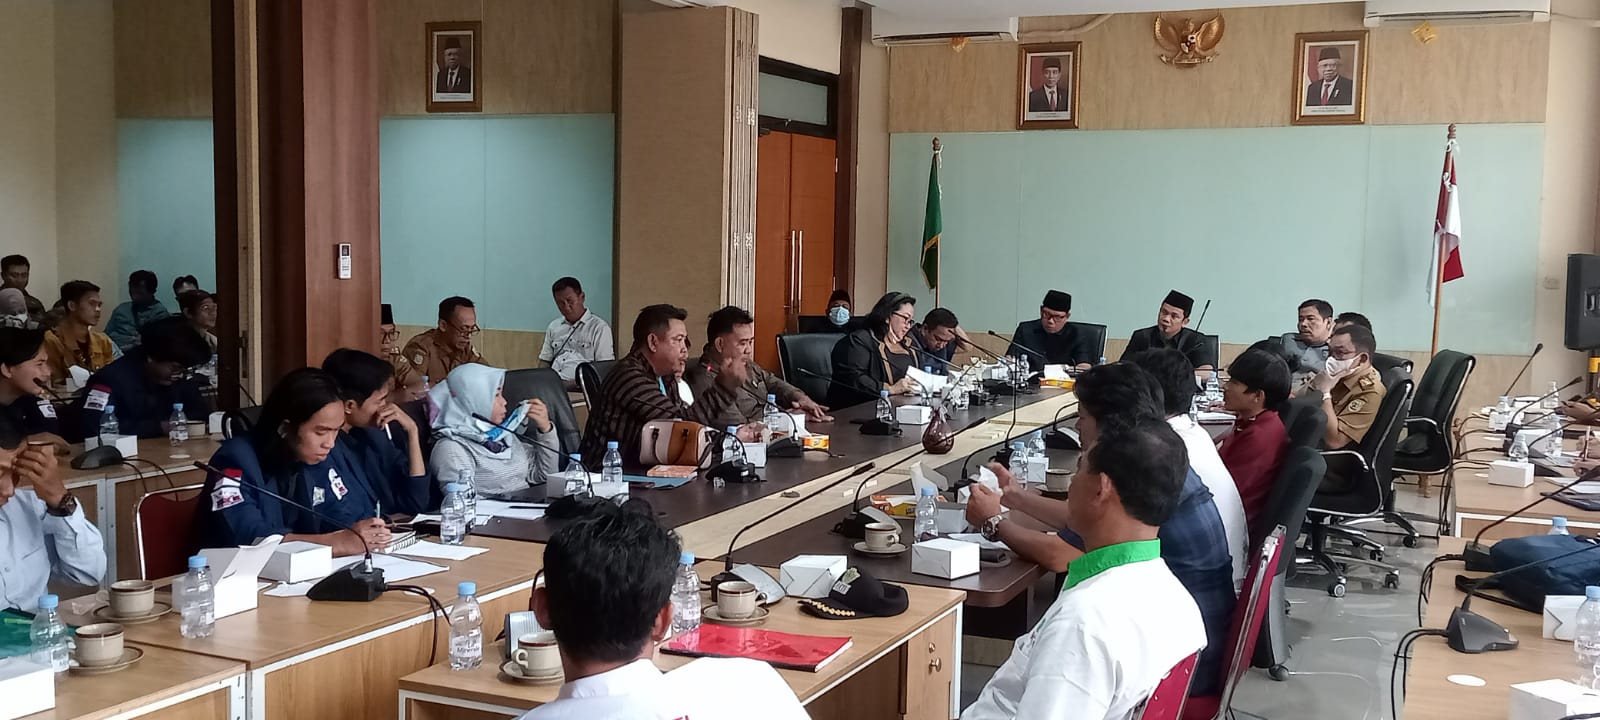 Audiensi DPRD Provinsi Bengkulu, Jonaidi: Aspirasi Jadi Atensi